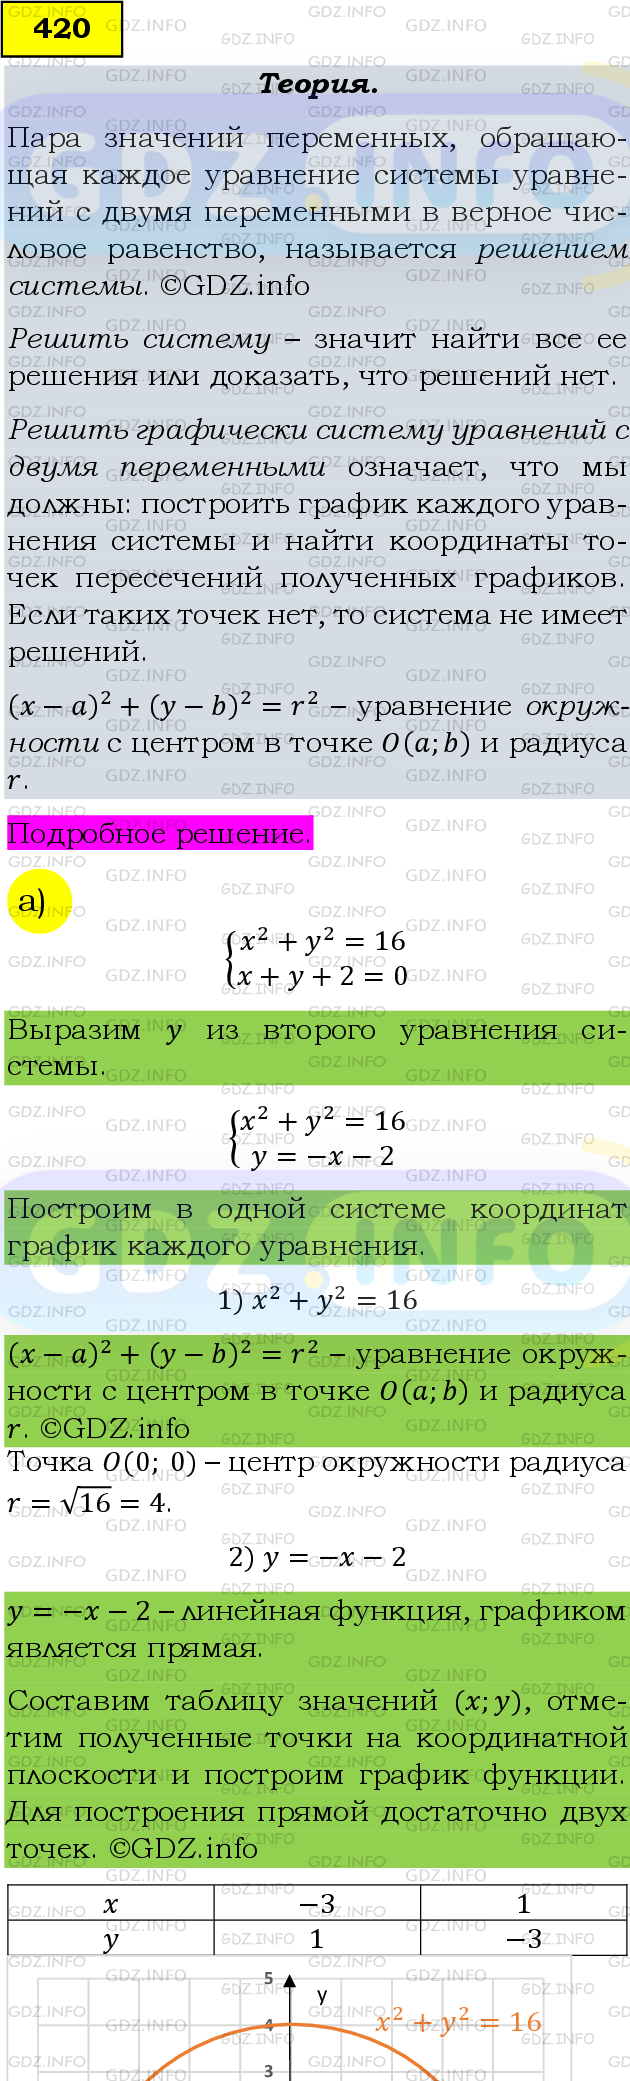 Фото подробного решения: Номер задания №420 из ГДЗ по Алгебре 9 класс: Макарычев Ю.Н.